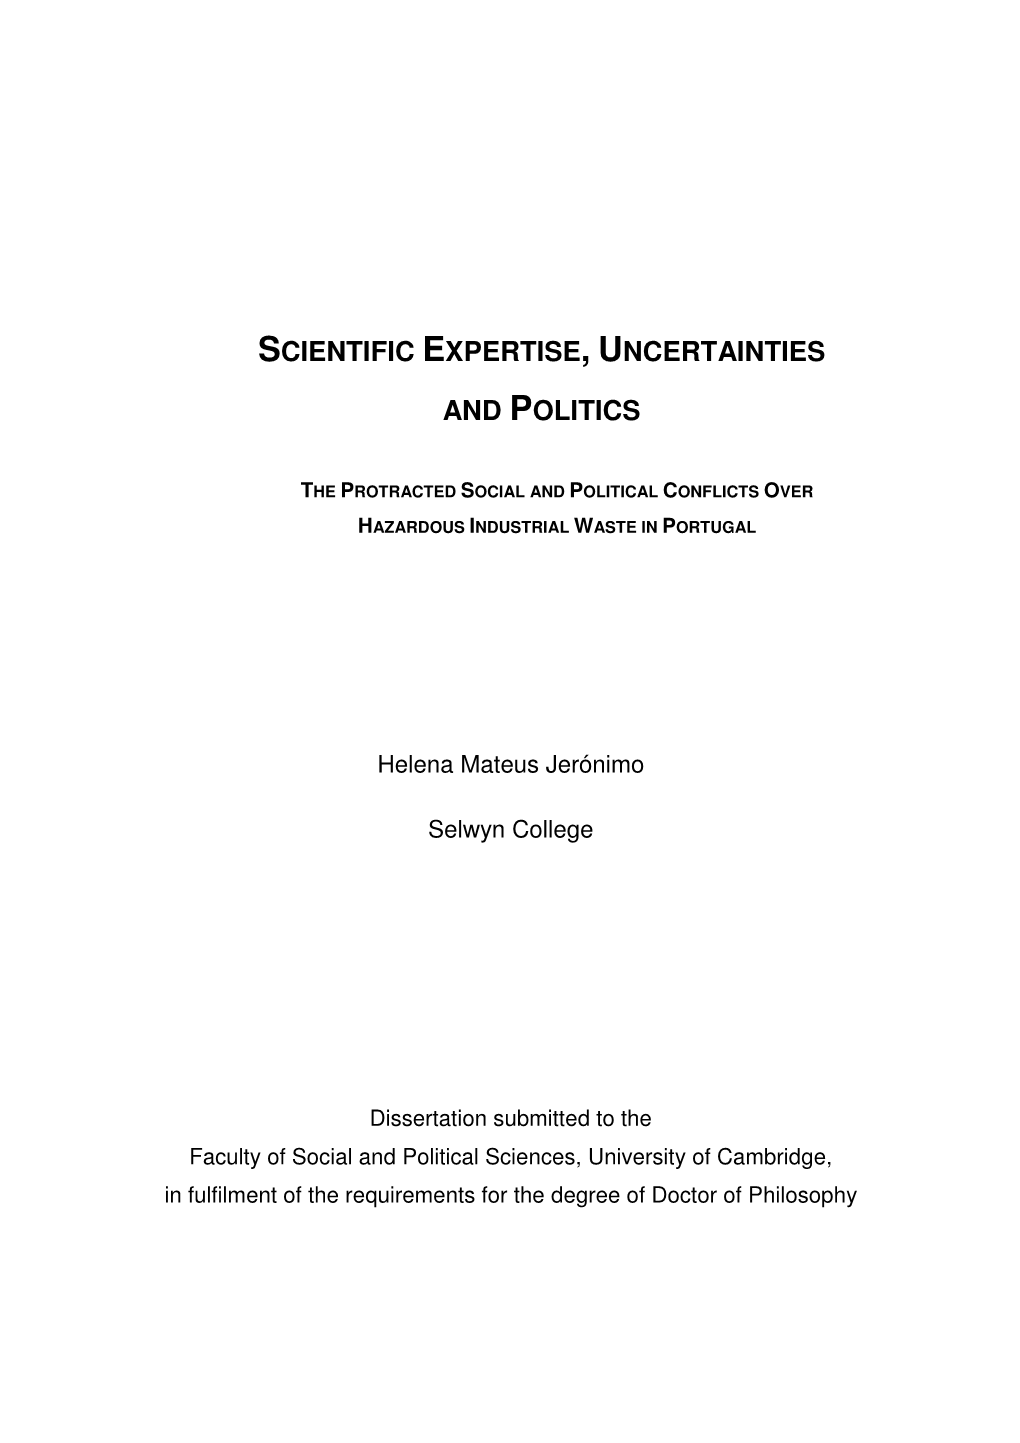 Scientific Expertise, Uncertainties and Politics